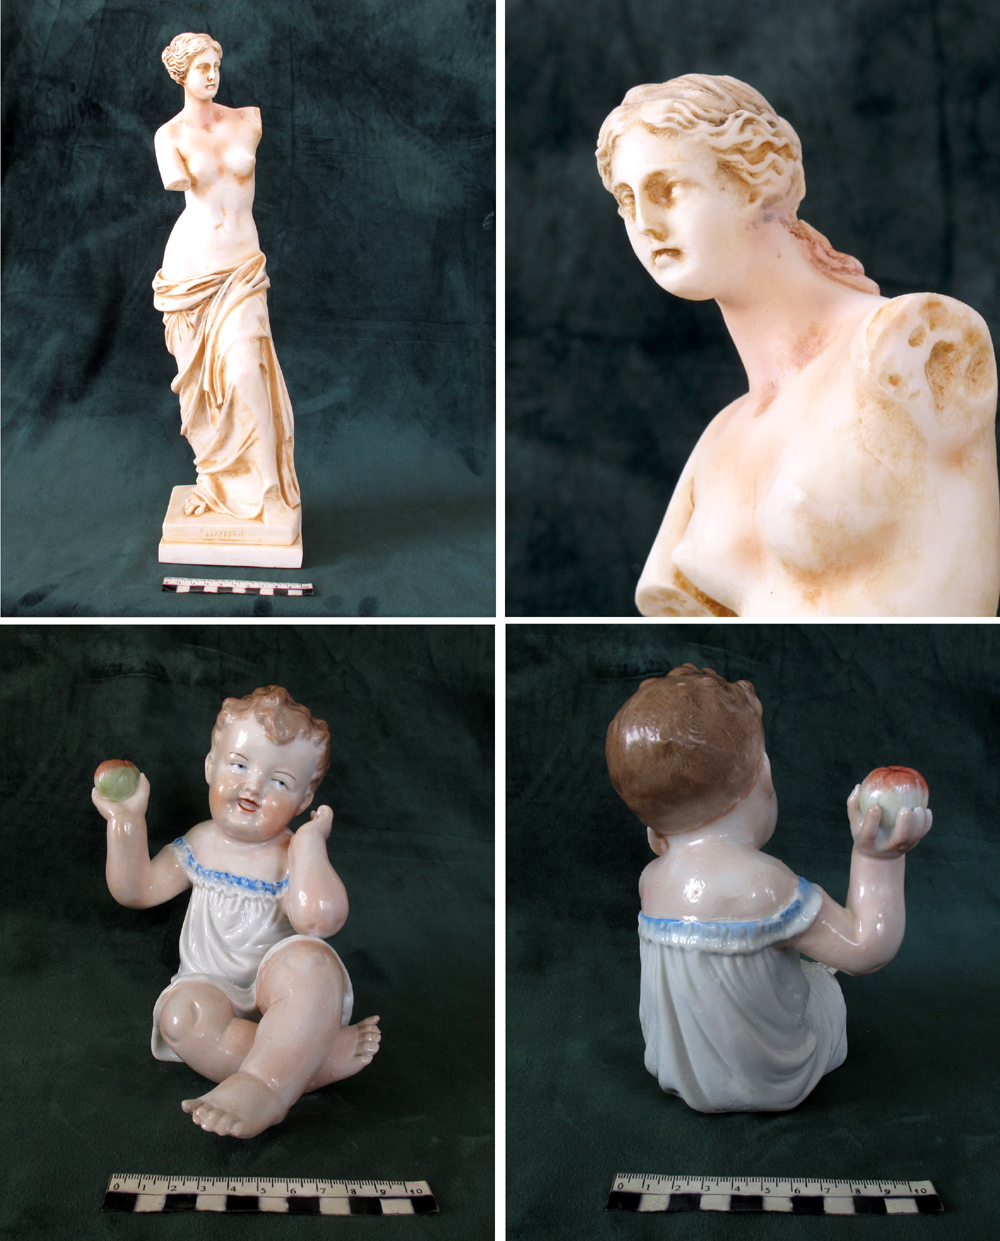  restoration of damaged figurines 